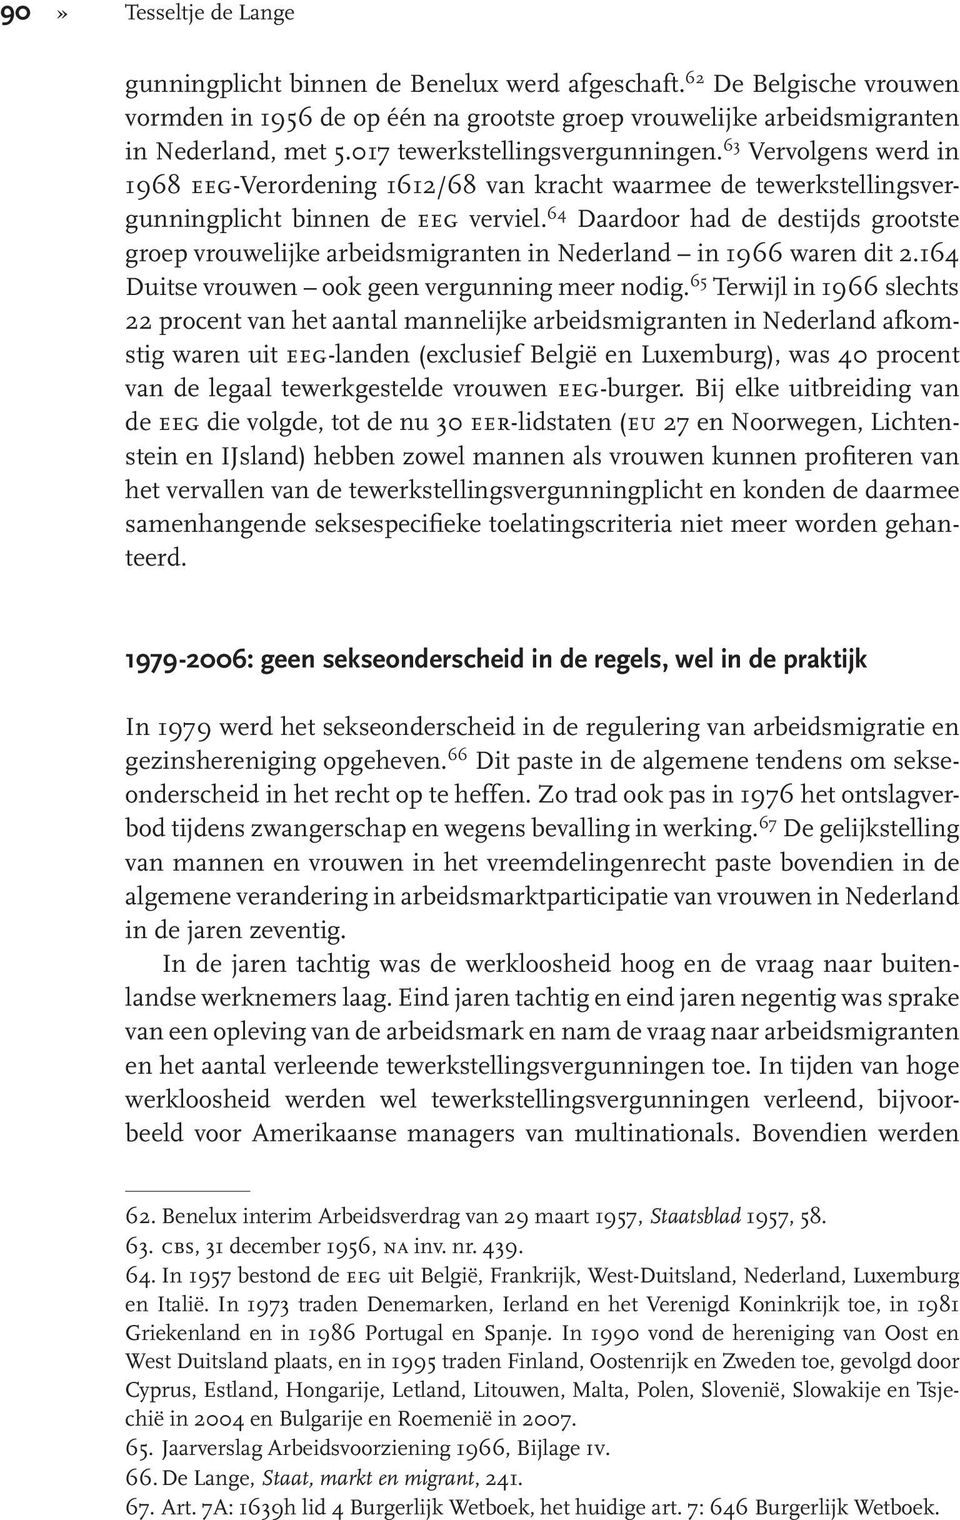 64 Daardoor had de destijds grootste groep vrouwelijke arbeidsmigranten in Nederland in 1966 waren dit 2.164 Duitse vrouwen ook geen vergunning meer nodig.